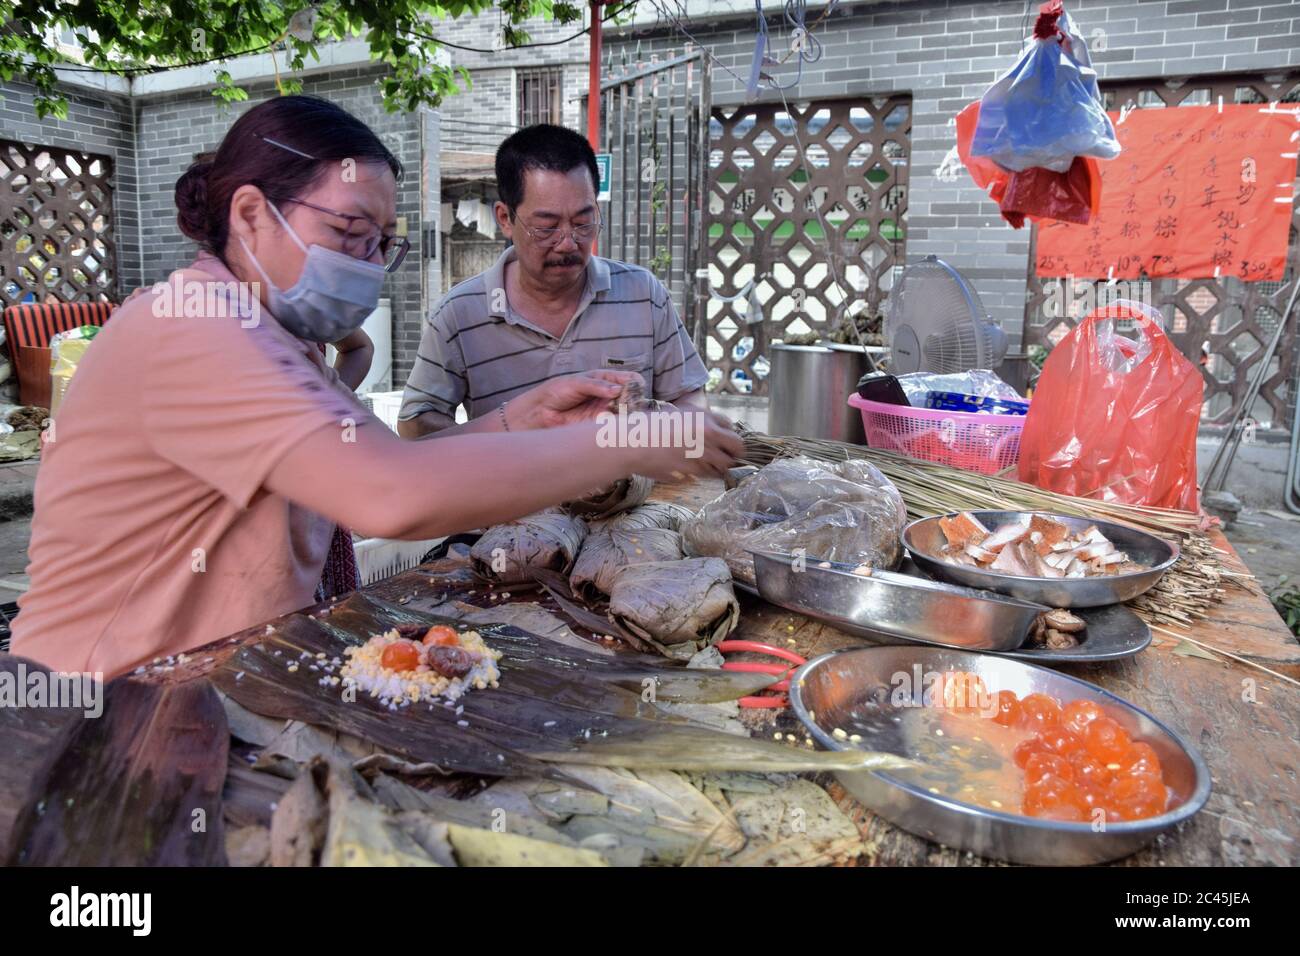 GUANGZHOU, CINA - CIRCA GIUGNO 2020: Fare zongzi, un piatto di riso cinese tradizionale che è fatto di riso glutinoso ripieno con diversi ripieni. Foto Stock